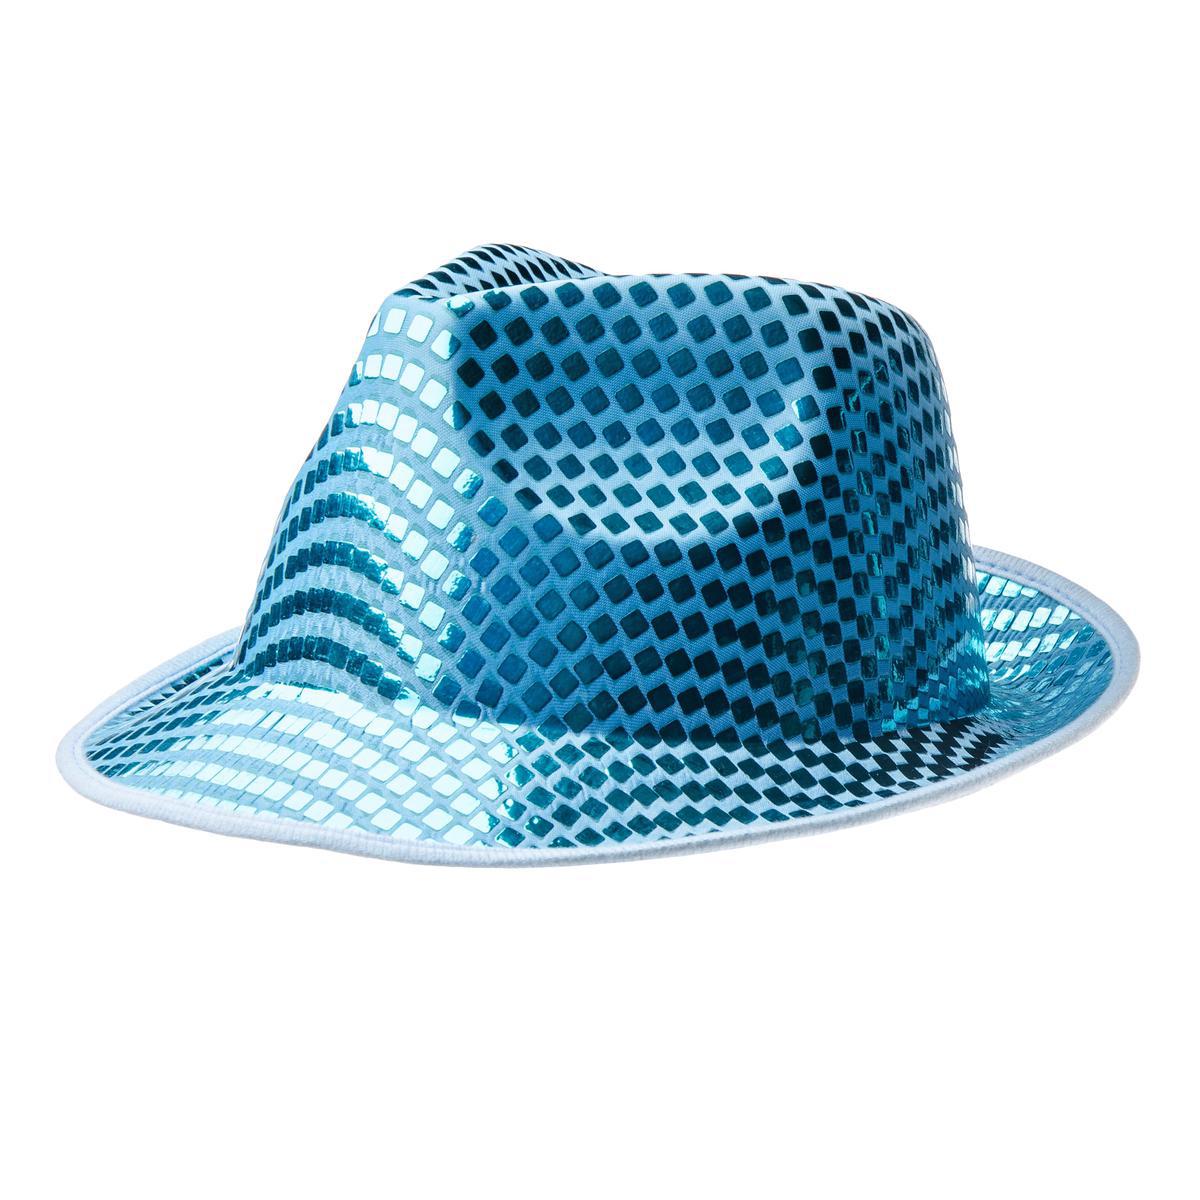 Chapeau disco - Polyester - 20 x 15 x 10 cm - Gris - Rouge - Bleu